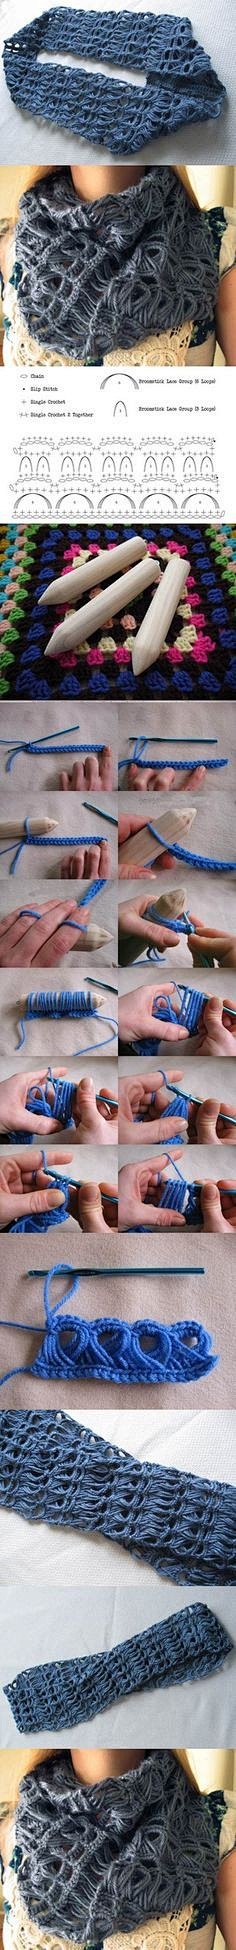 DIY Stylish Crochet ...